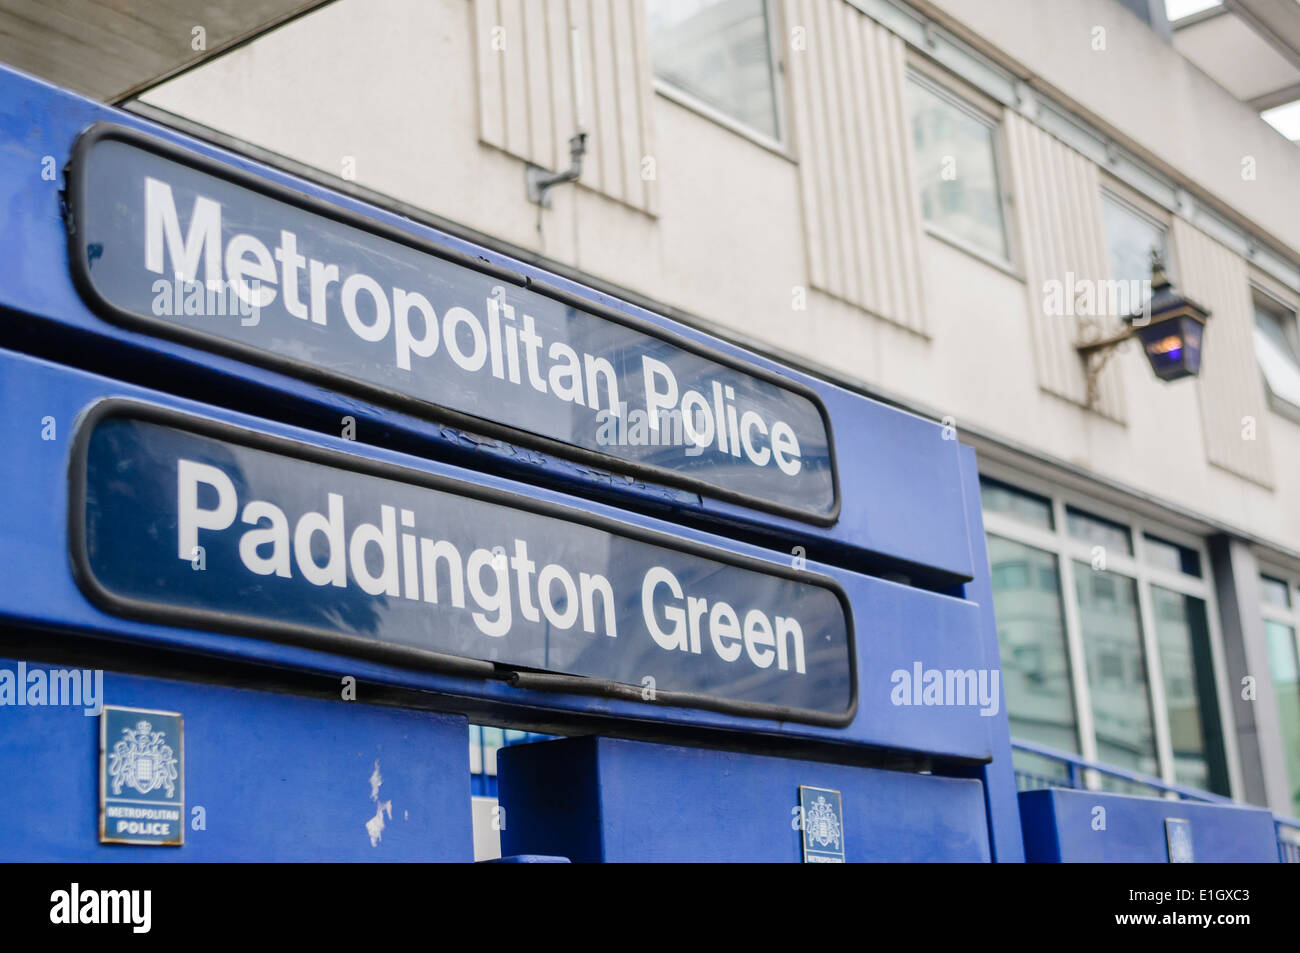 Paddington Green Metropolitan Police Station Stock Photo